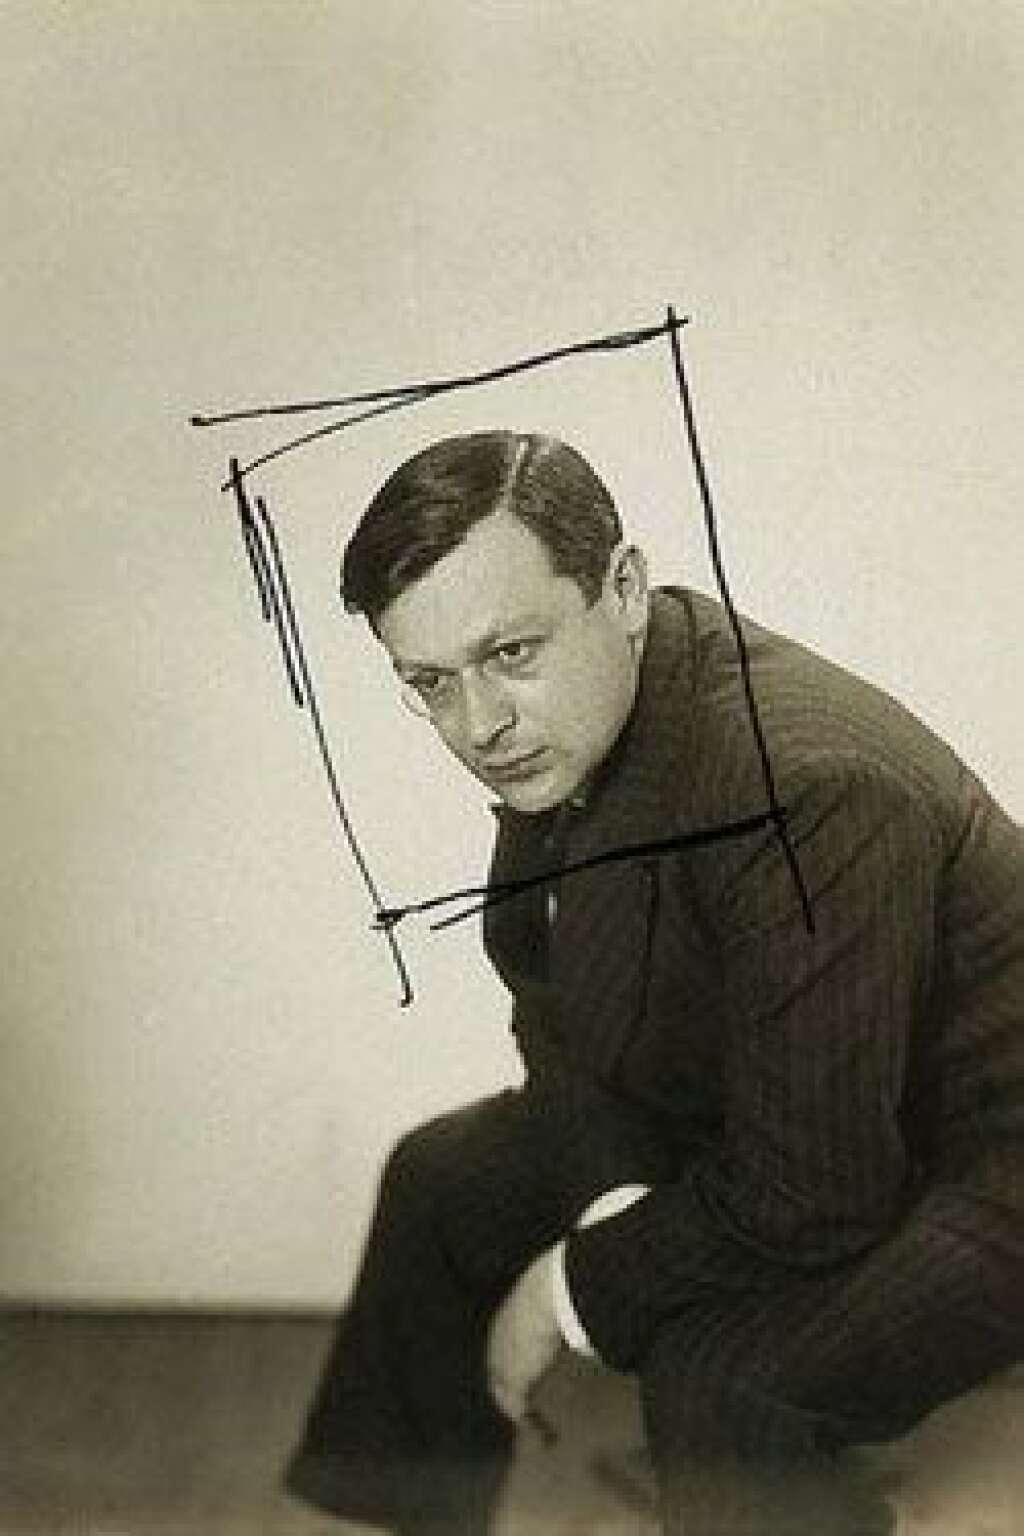 Tristan Tzara, l'homme approximatif - <br>À travers Brancusi, Calder, Delaunay, Max Ernst, Le Douanier Rousseau ou Man Ray, le musée d'Art Moderne et Contemporain de Strasbourg présente la première rétrospective consacrée au poète, écrivain d'art et collectionneur au monocle, Tristan Tzara (1895-1963). Connu et prononcé dès que le dadaïsme est abordé, Tzara aura influencé une partie des artistes de sa génération. Les plus grands furent aussi ses amis et illustrèrent ses écrits.<br><br>  <em>Man Ray (1890-1976), Tristan Tzara, vers 1924, épreuve gélatino-argentique recadré à l’encre noire par l’artiste, 11,3 x 8,1 cm, Paris, Centre Pompidou</em><br><br>  <strong><a href="http://www.musees.strasbourg.eu/index.php?mact=News,cntnt01,detail,0&cntnt01articleid=5324&cntnt01detailtemplate=Exposition&cntnt01returnid=443" target="_blank">L'exposition a lieu du 24 septembre 2015 au 17 janvier 2016 au musée d'art moderne et contemporain de Strasbourg</a></strong>